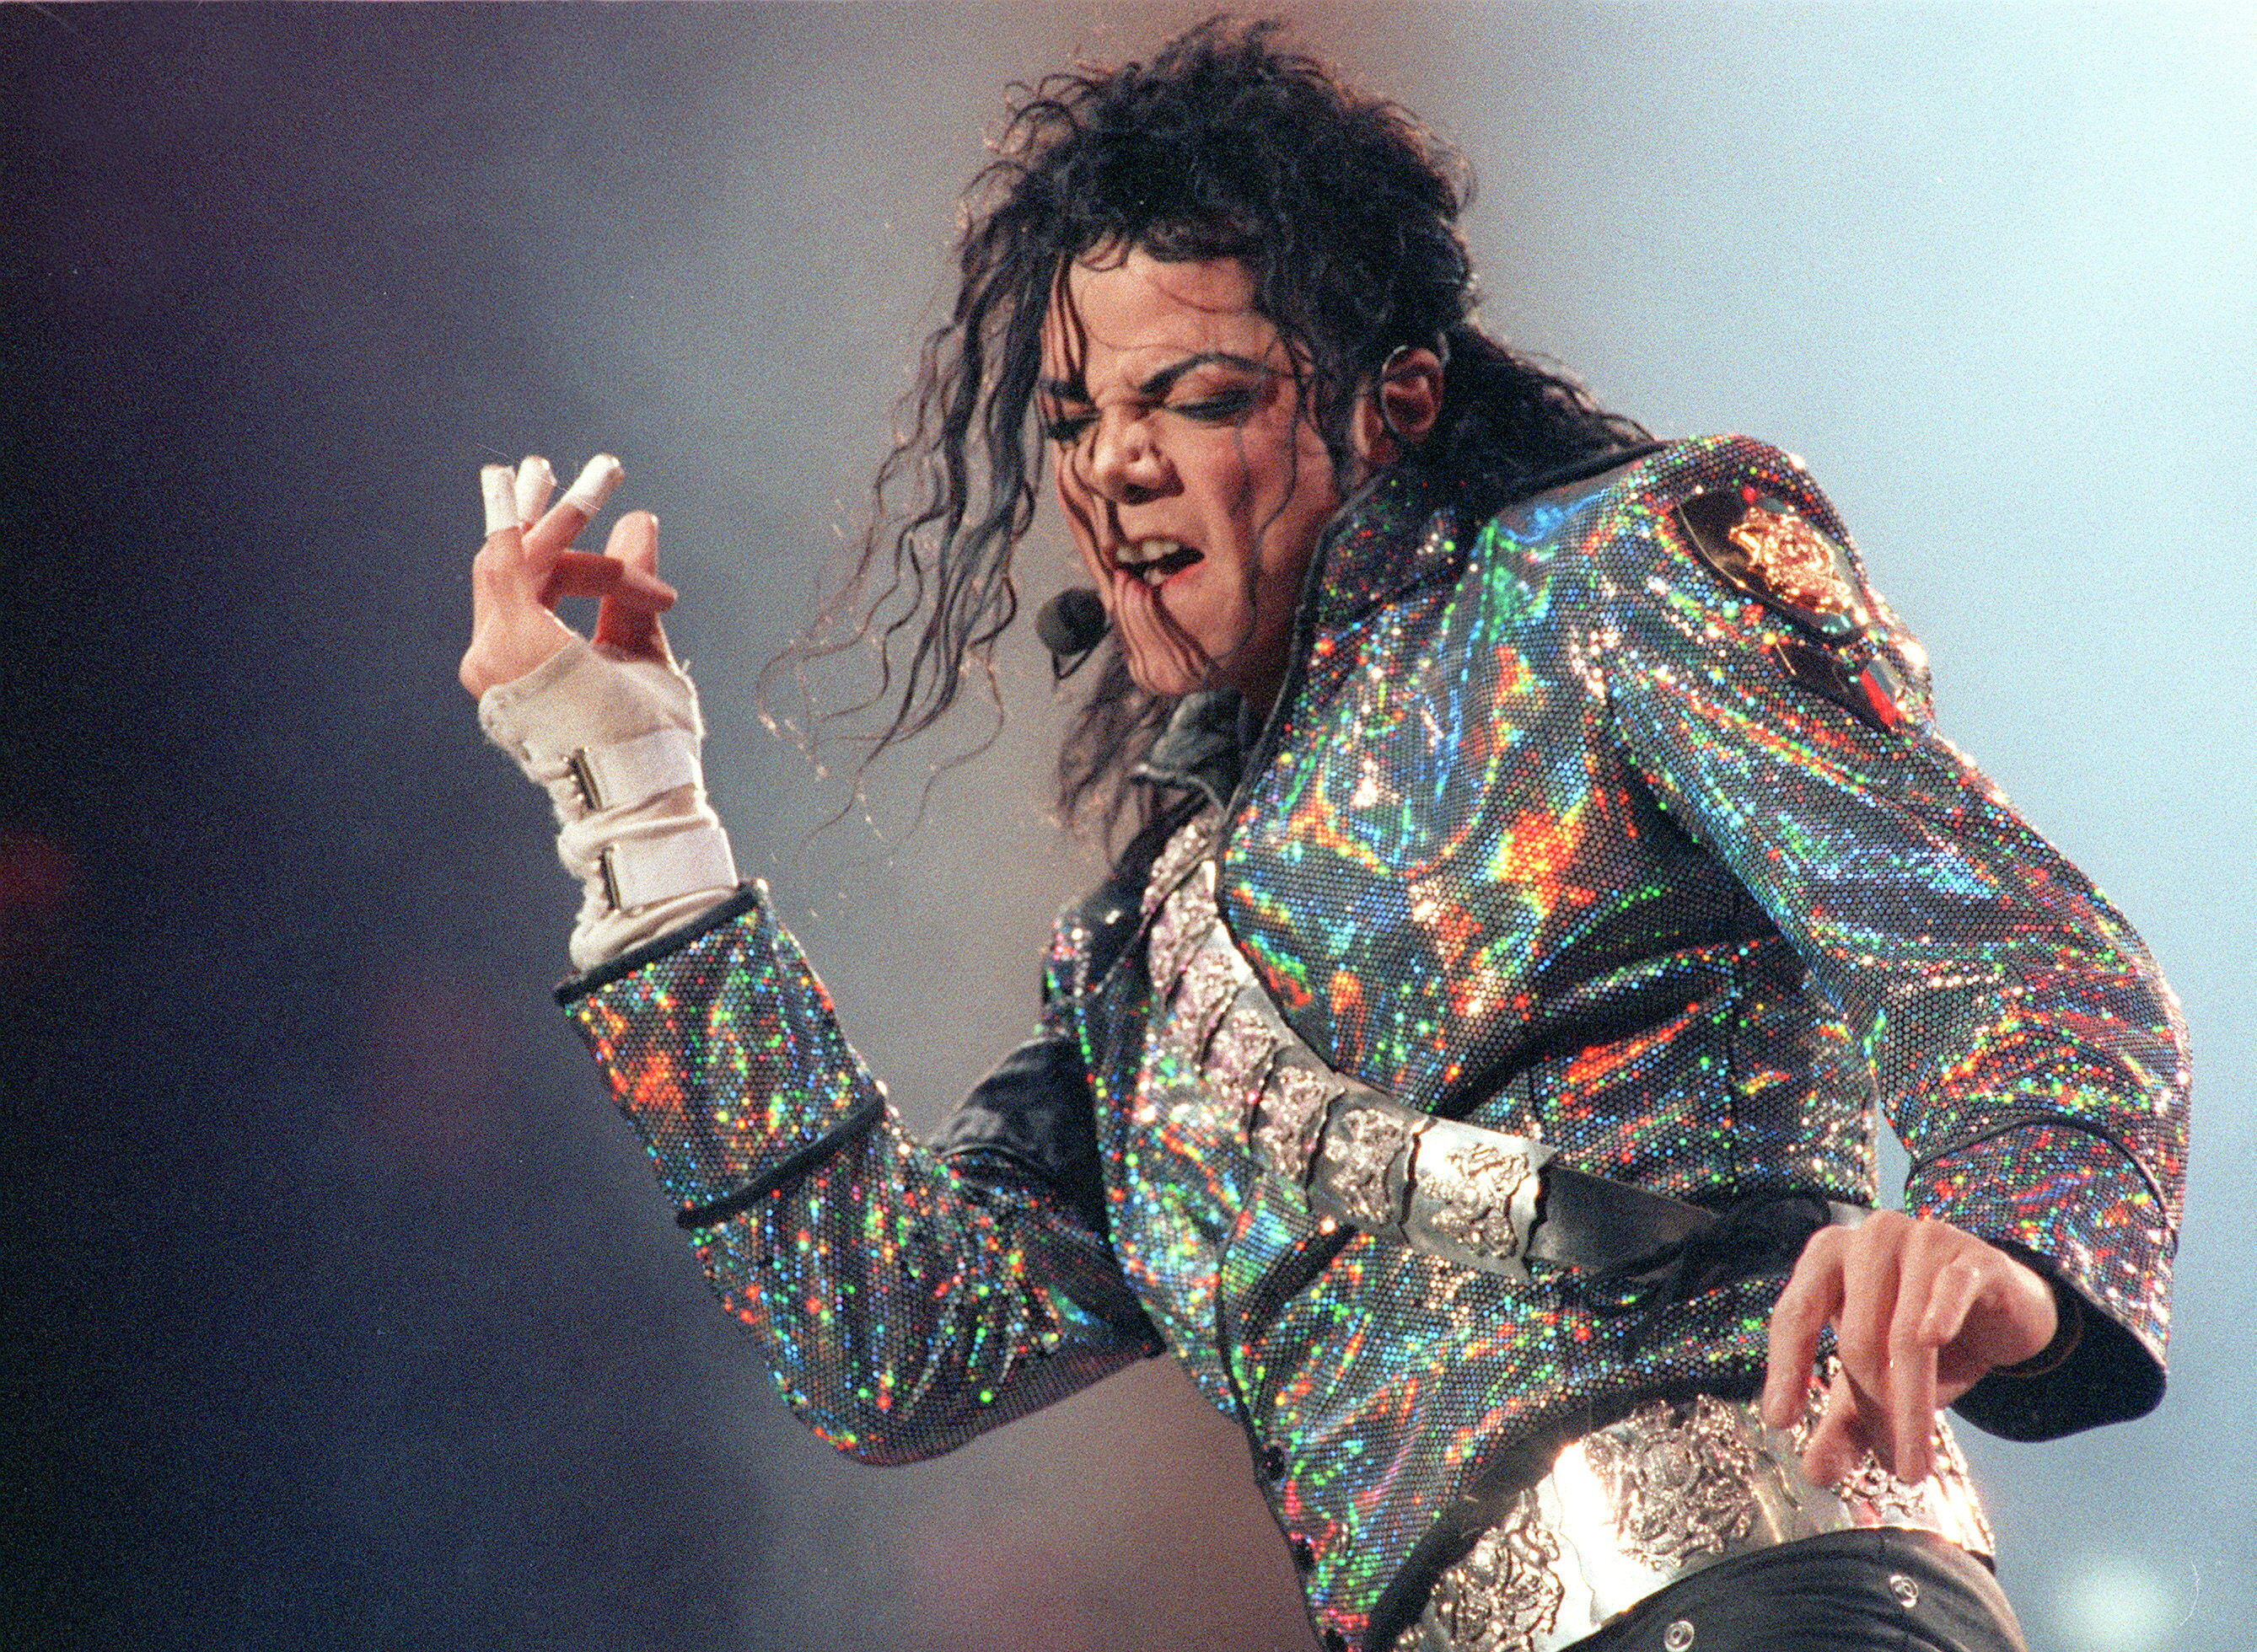 El cantante estadounidense Michael Jackson falleció en 2009 por una intoxicación con un medicamento que era de consumo controlado (EFE)